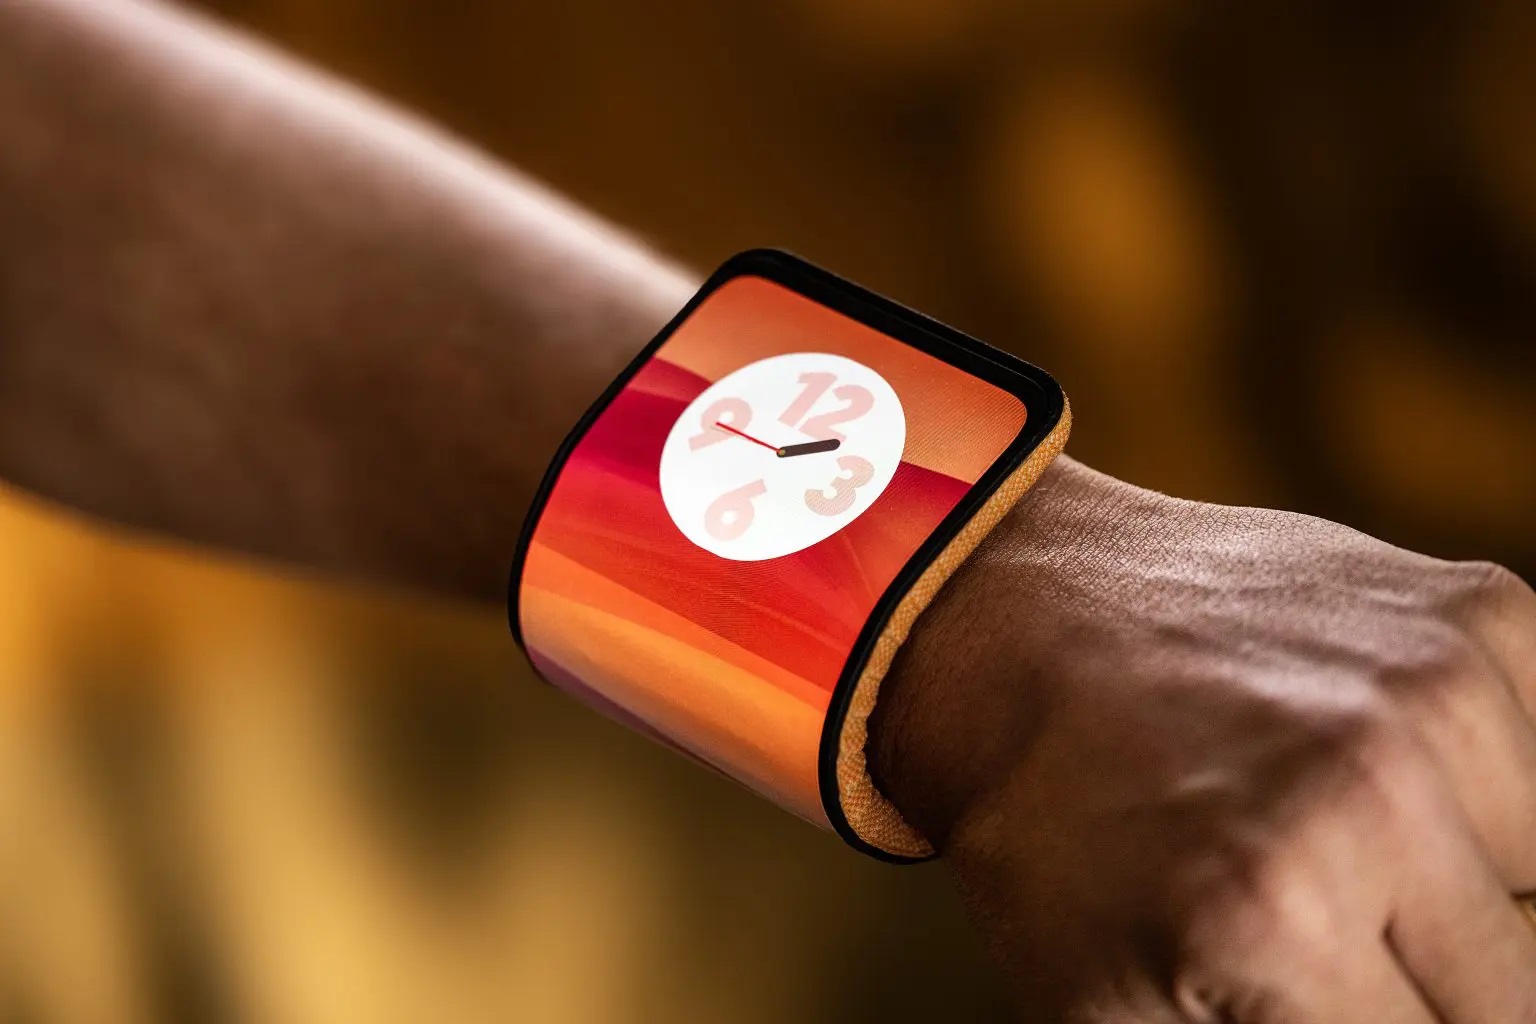 Motorola zaprezentowała elastyczną bransoletkę na smartfona, którą można nosić na nadgarstku zamiast zegarka.